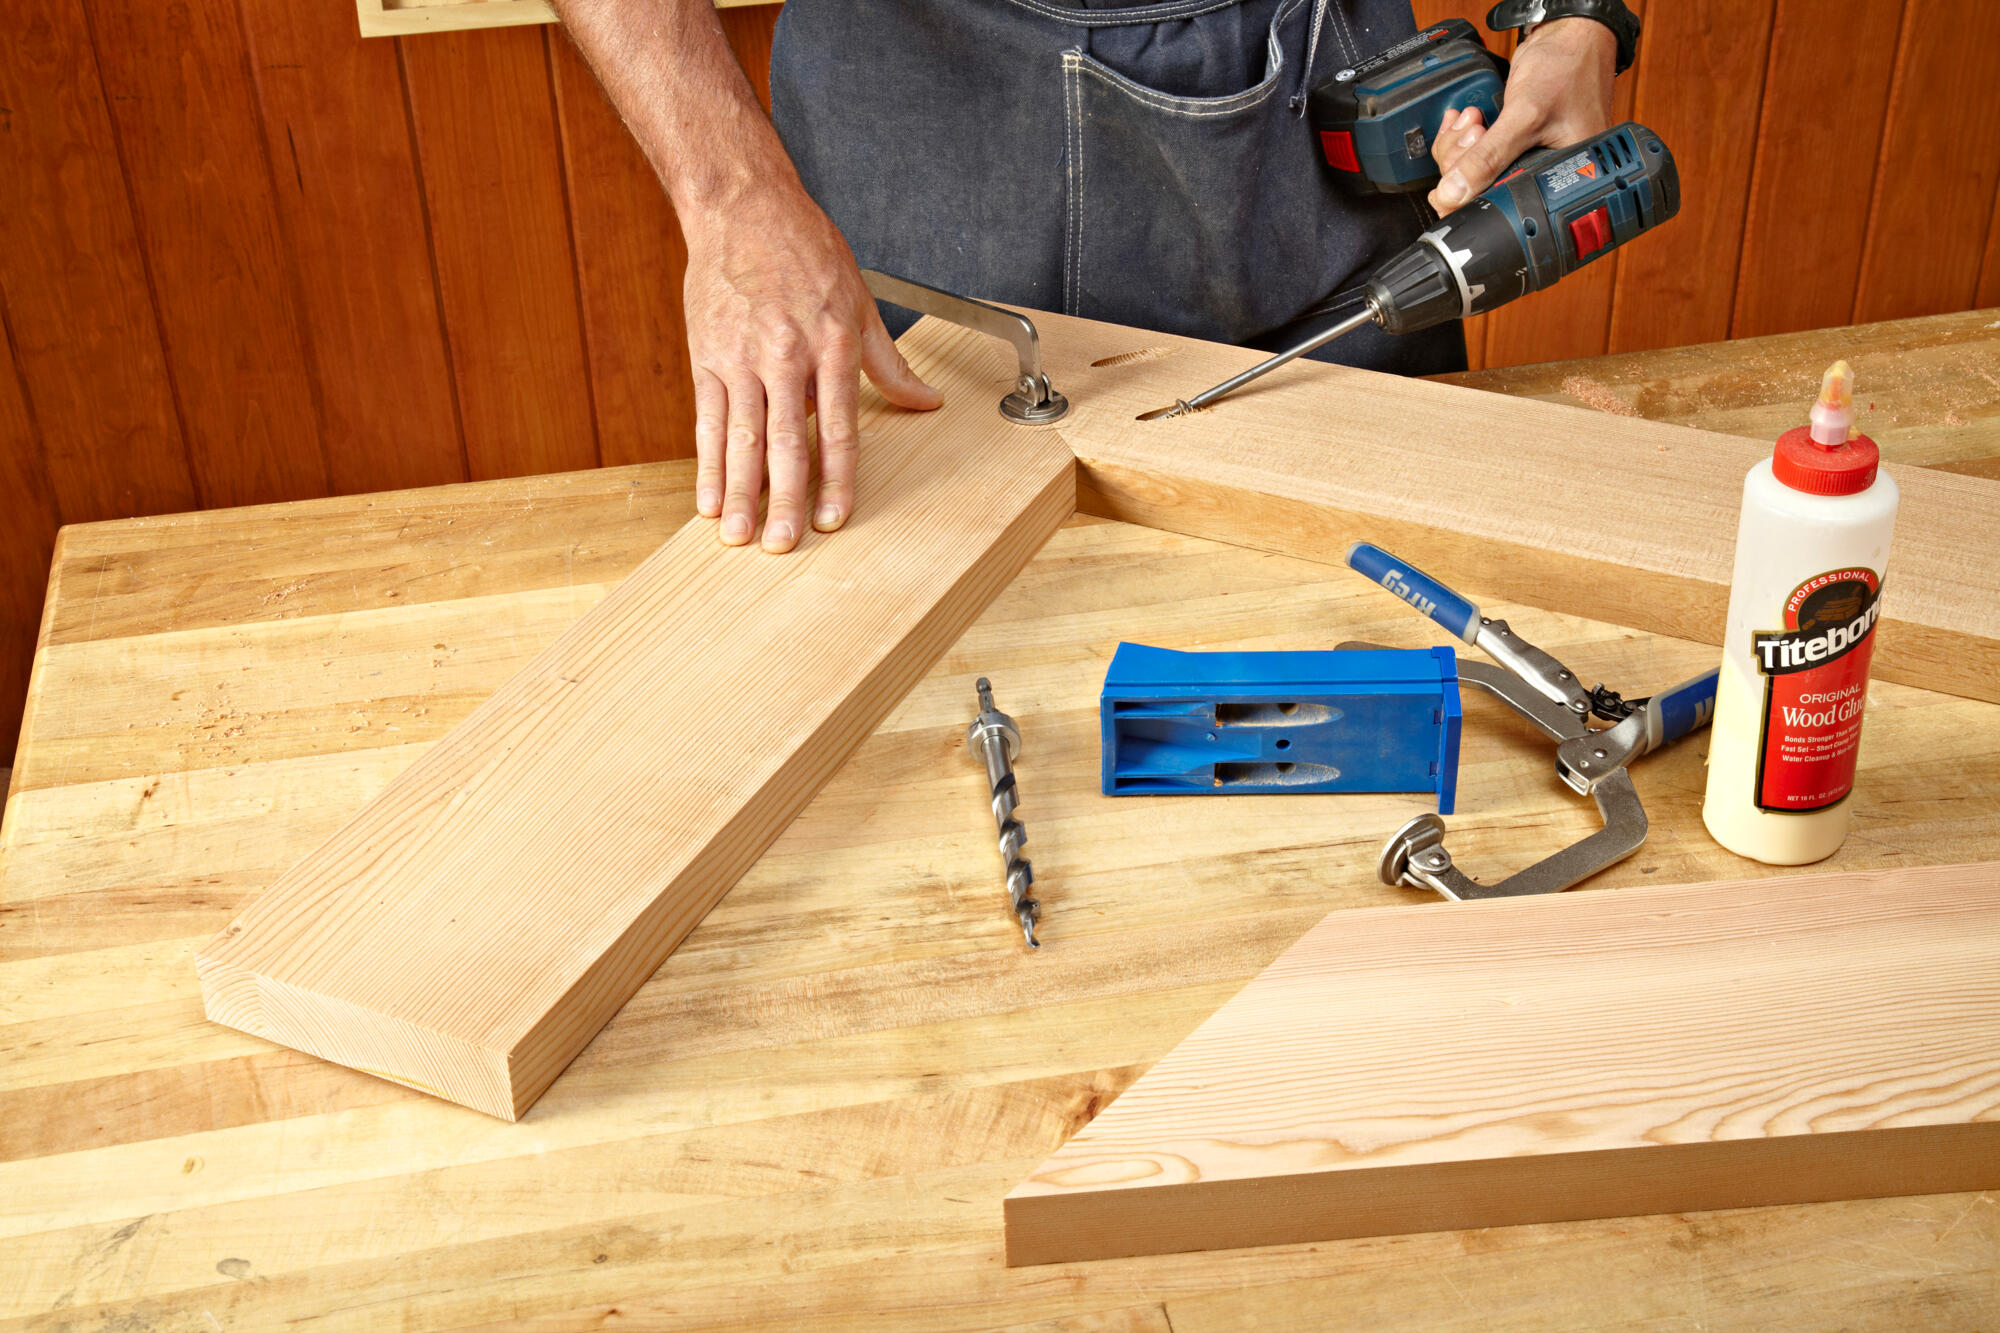 Hardmetalen wisselplaten voor hout: het beste gereedschap voor brede toepassingen